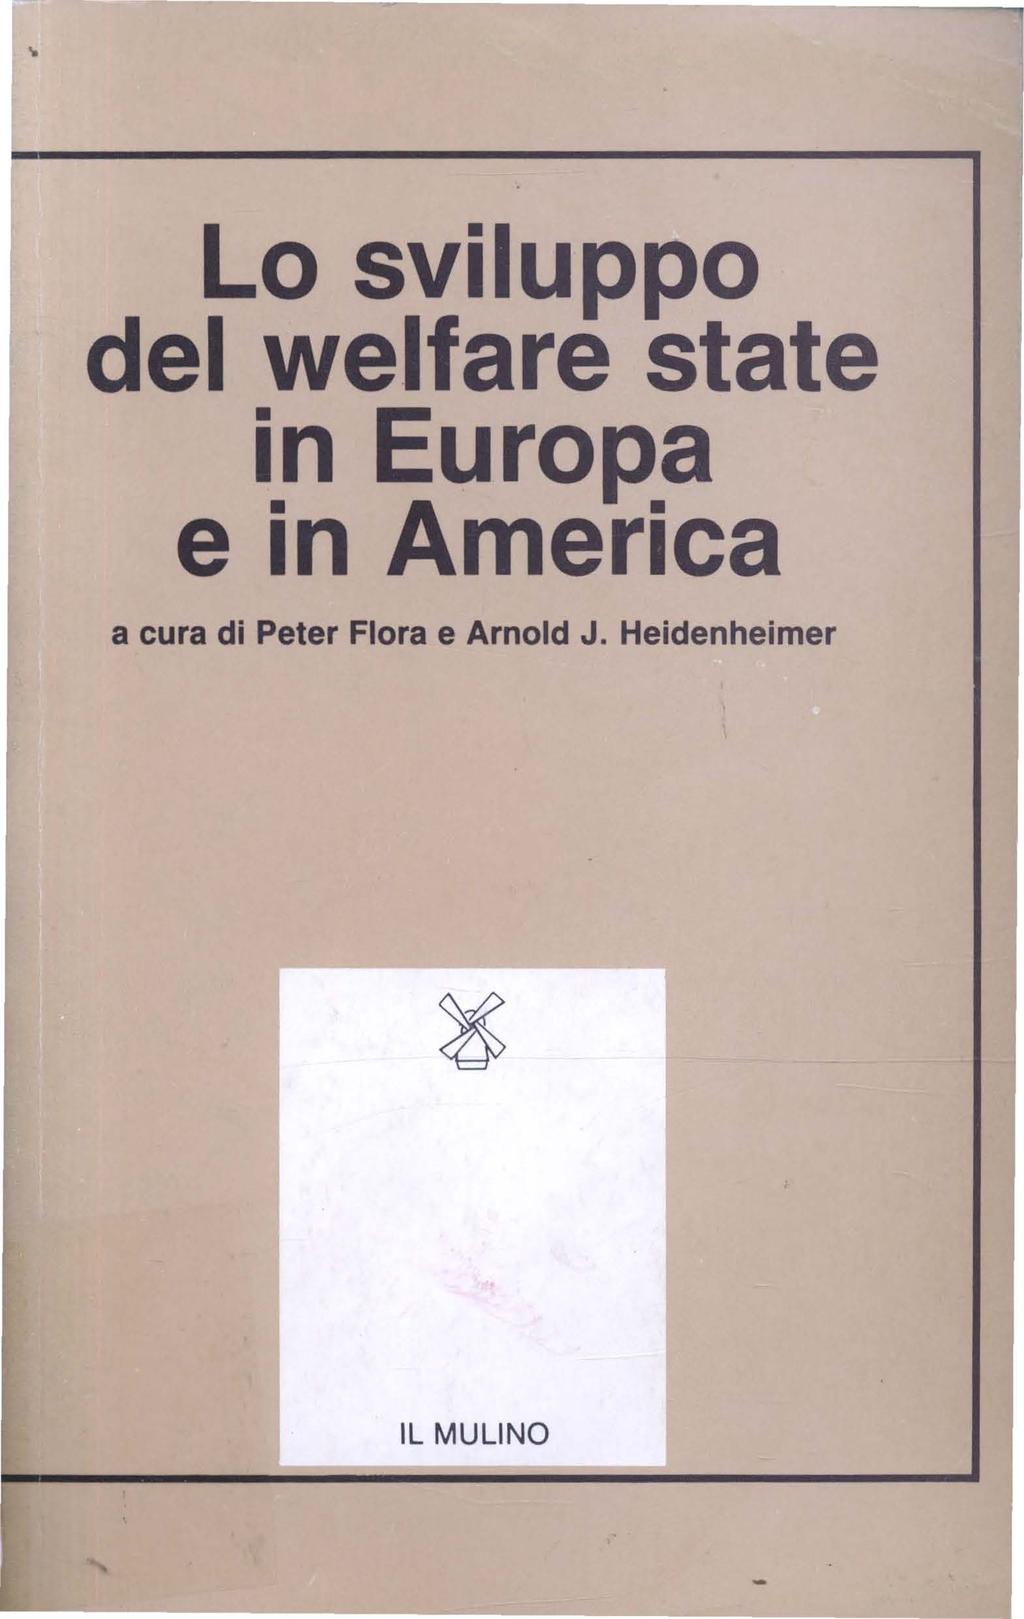 Lo sviluppo del welfare state in Europa e in America a